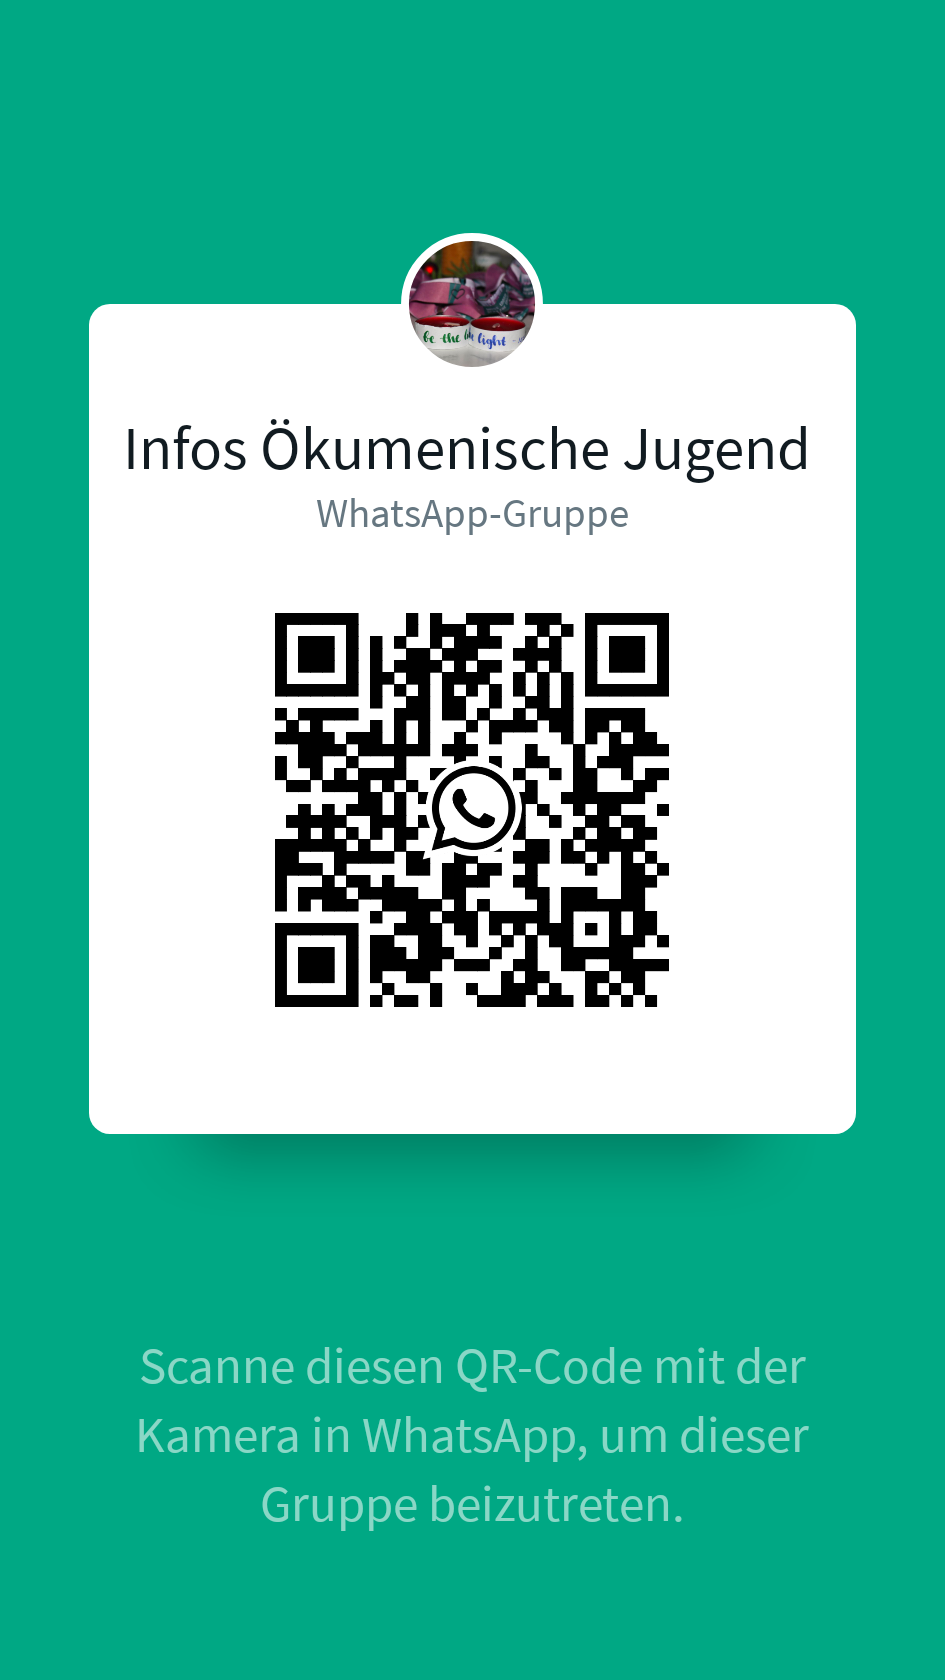 QR-Code Info-Whatsapp-Gruppe (c) Carina Rausch